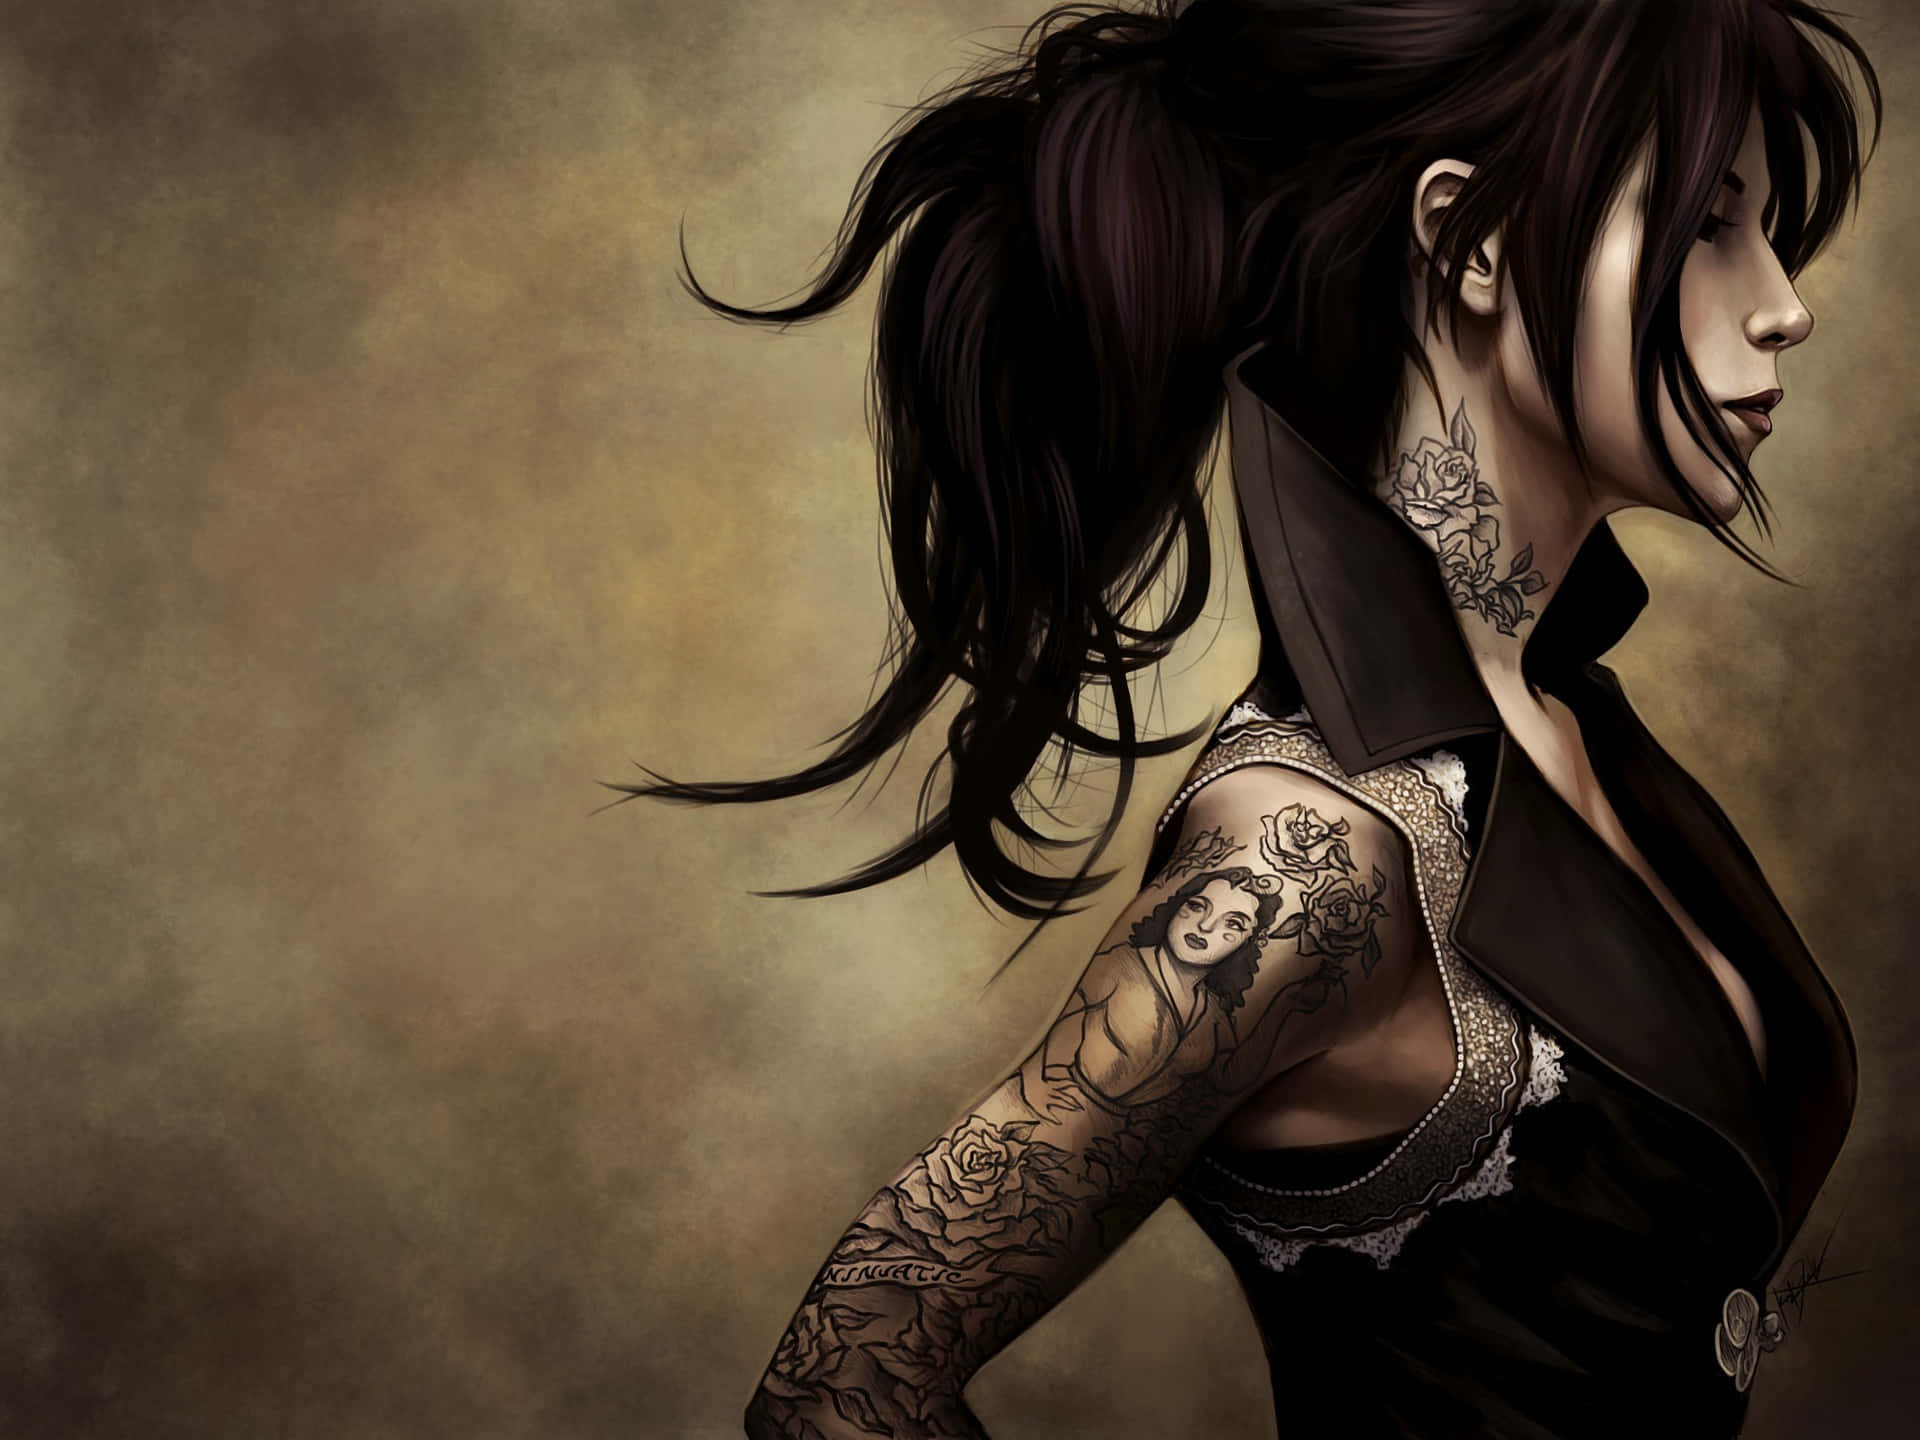 Tatuagemno Pescoço De Uma Mulher Ilustrada. Papel de Parede